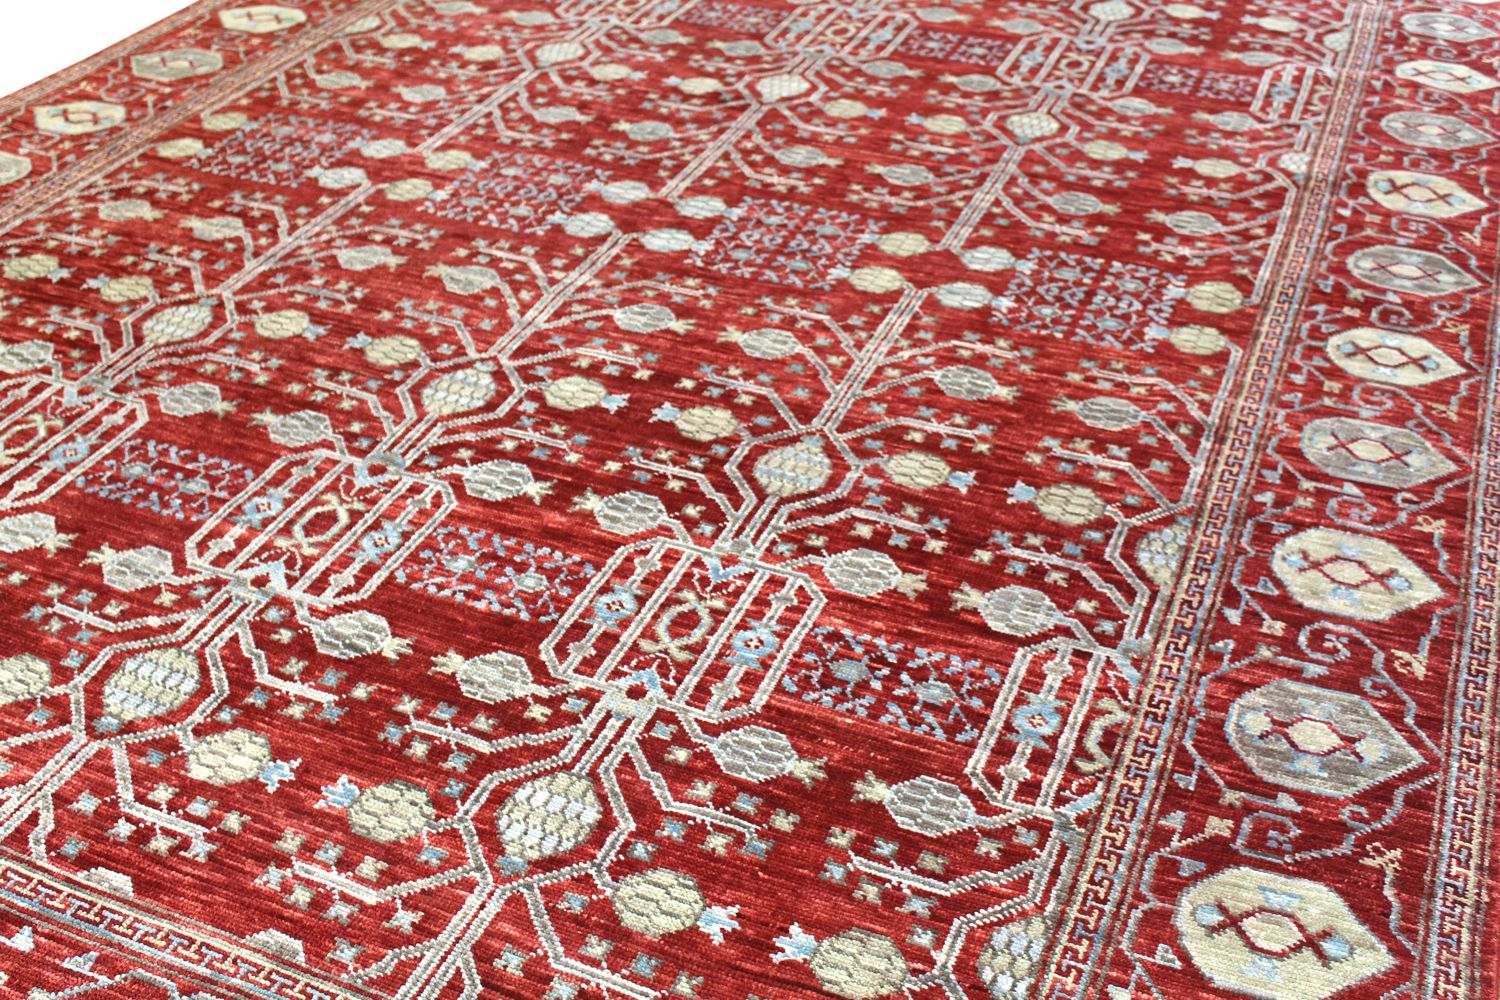 Khotan Handwoven Traditional Rug, J56591